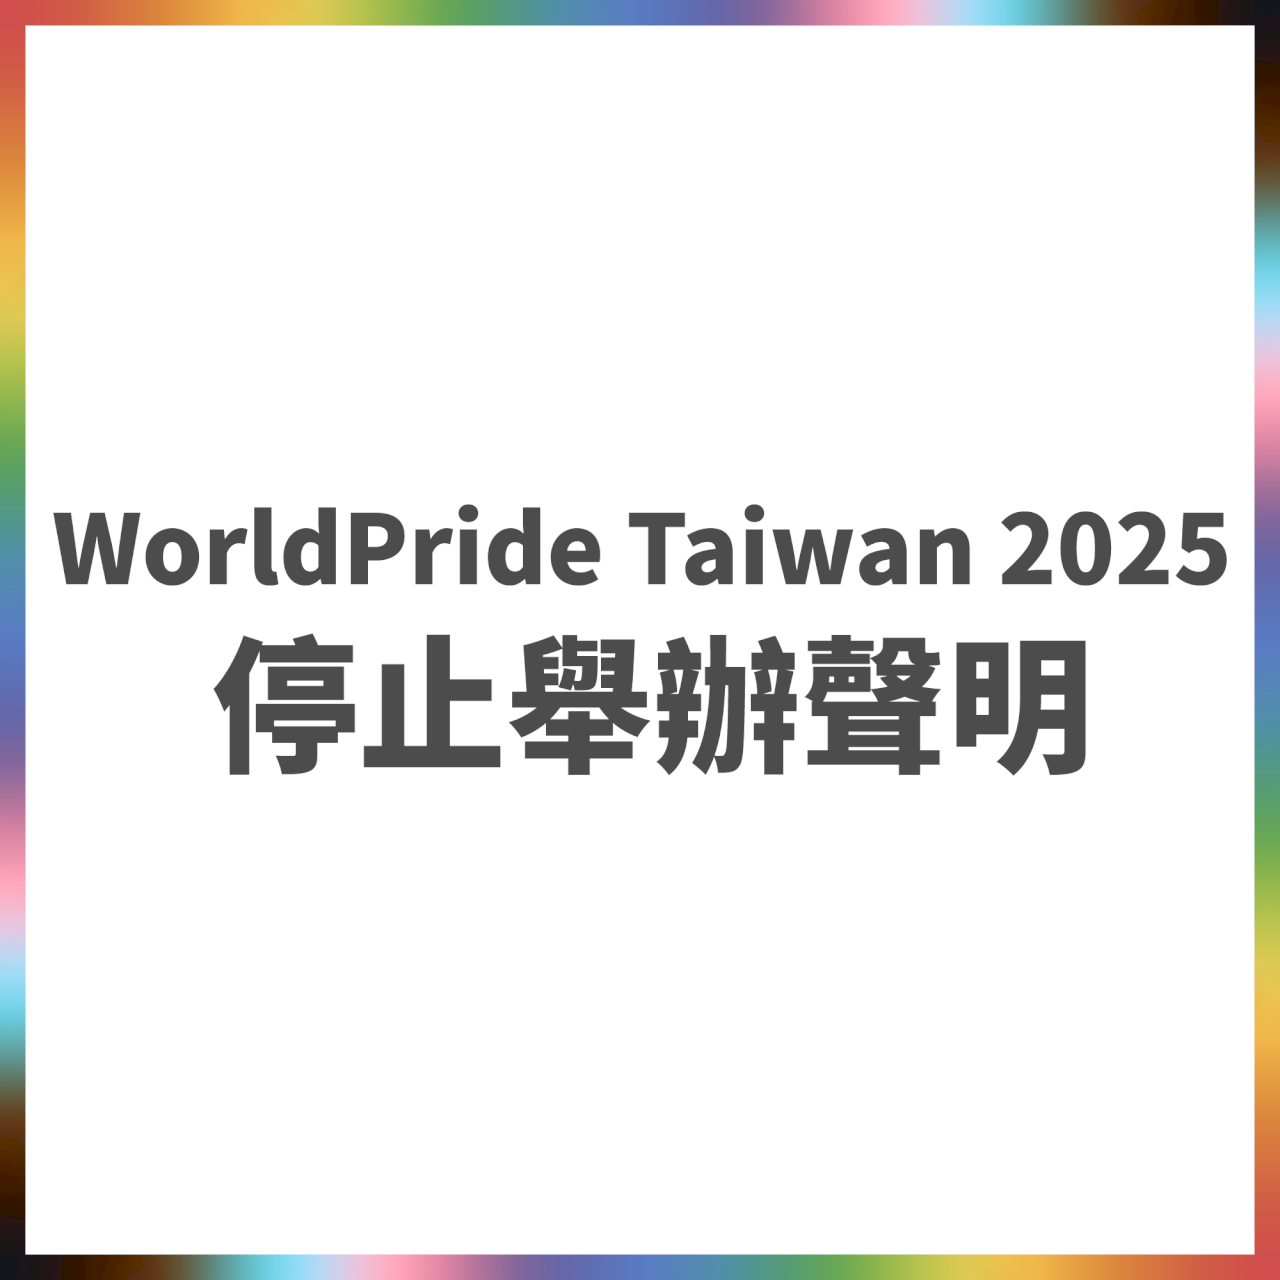 「WorldPride 2025」の台湾名義開催が拒否され、外交部＝遺憾